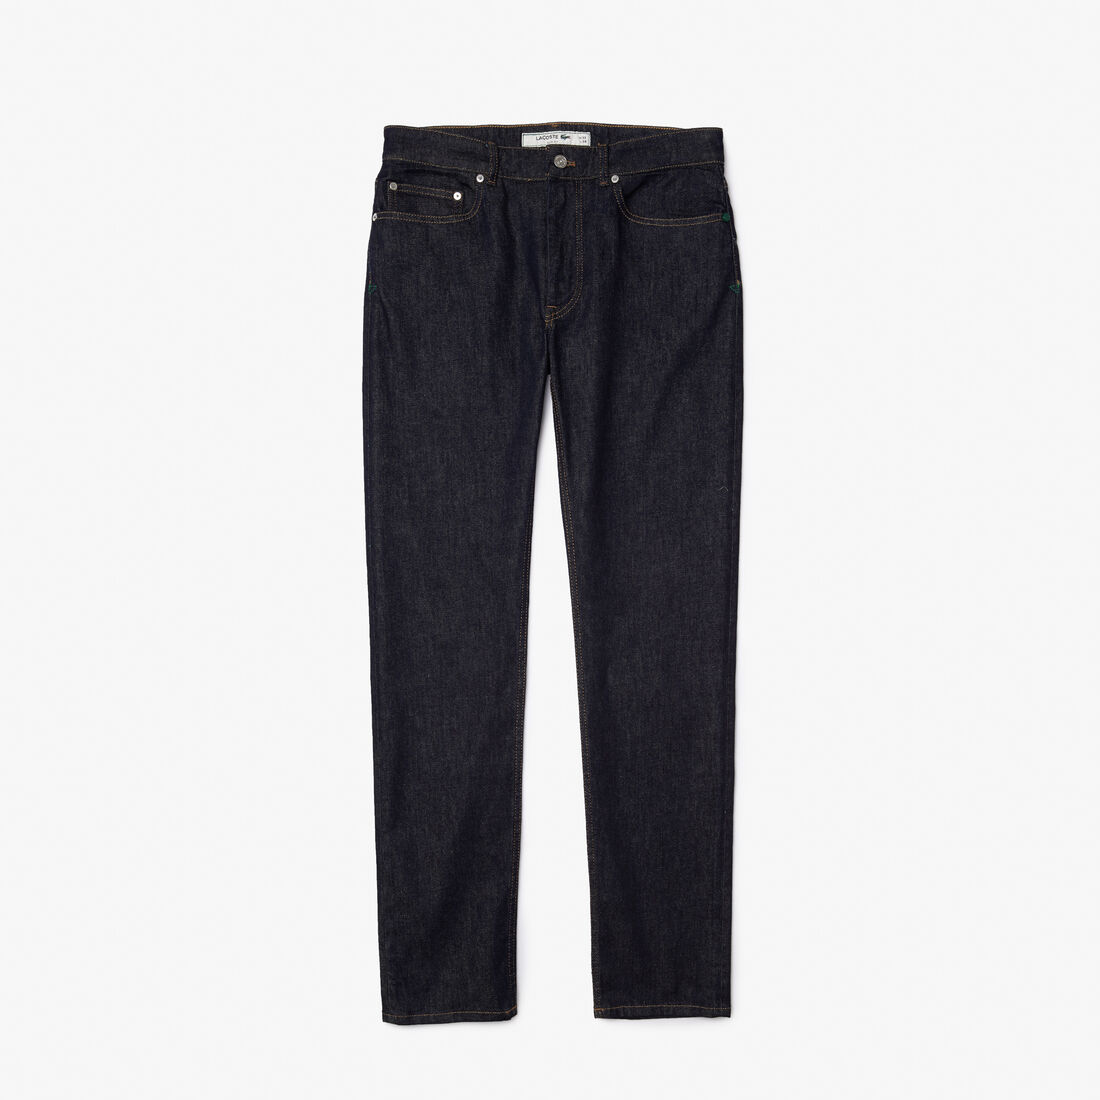 Lacoste Slim Fit Stretch Baumwoll Denim Jeans Herren Blau | XZYJ-94721